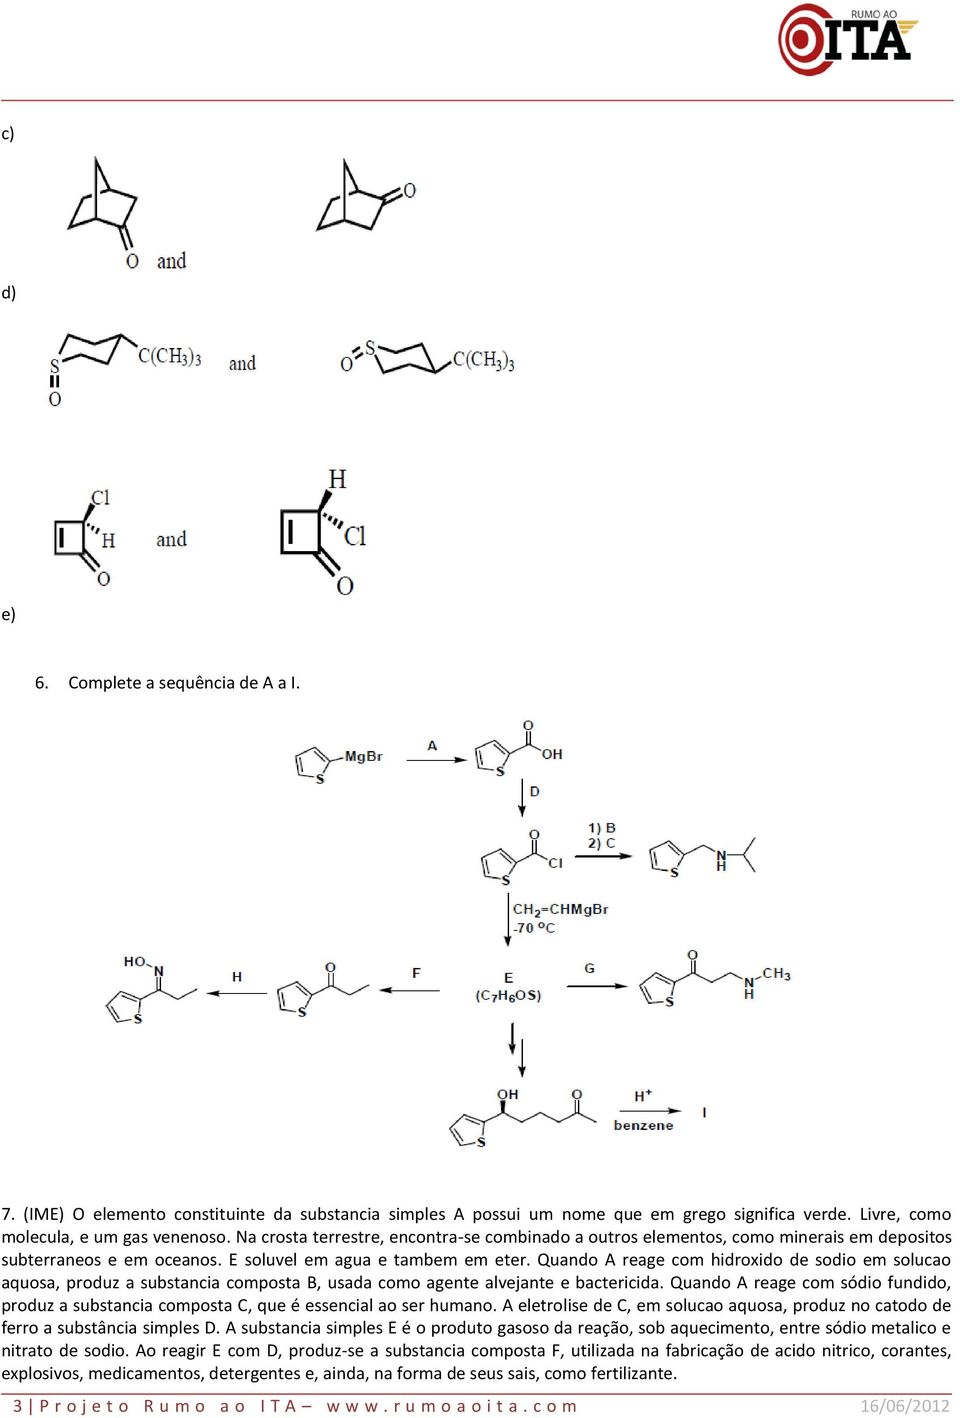 Quando A reage com hidroxido de sodio em solucao aquosa, produz a substancia composta B, usada como agente alvejante e bactericida.